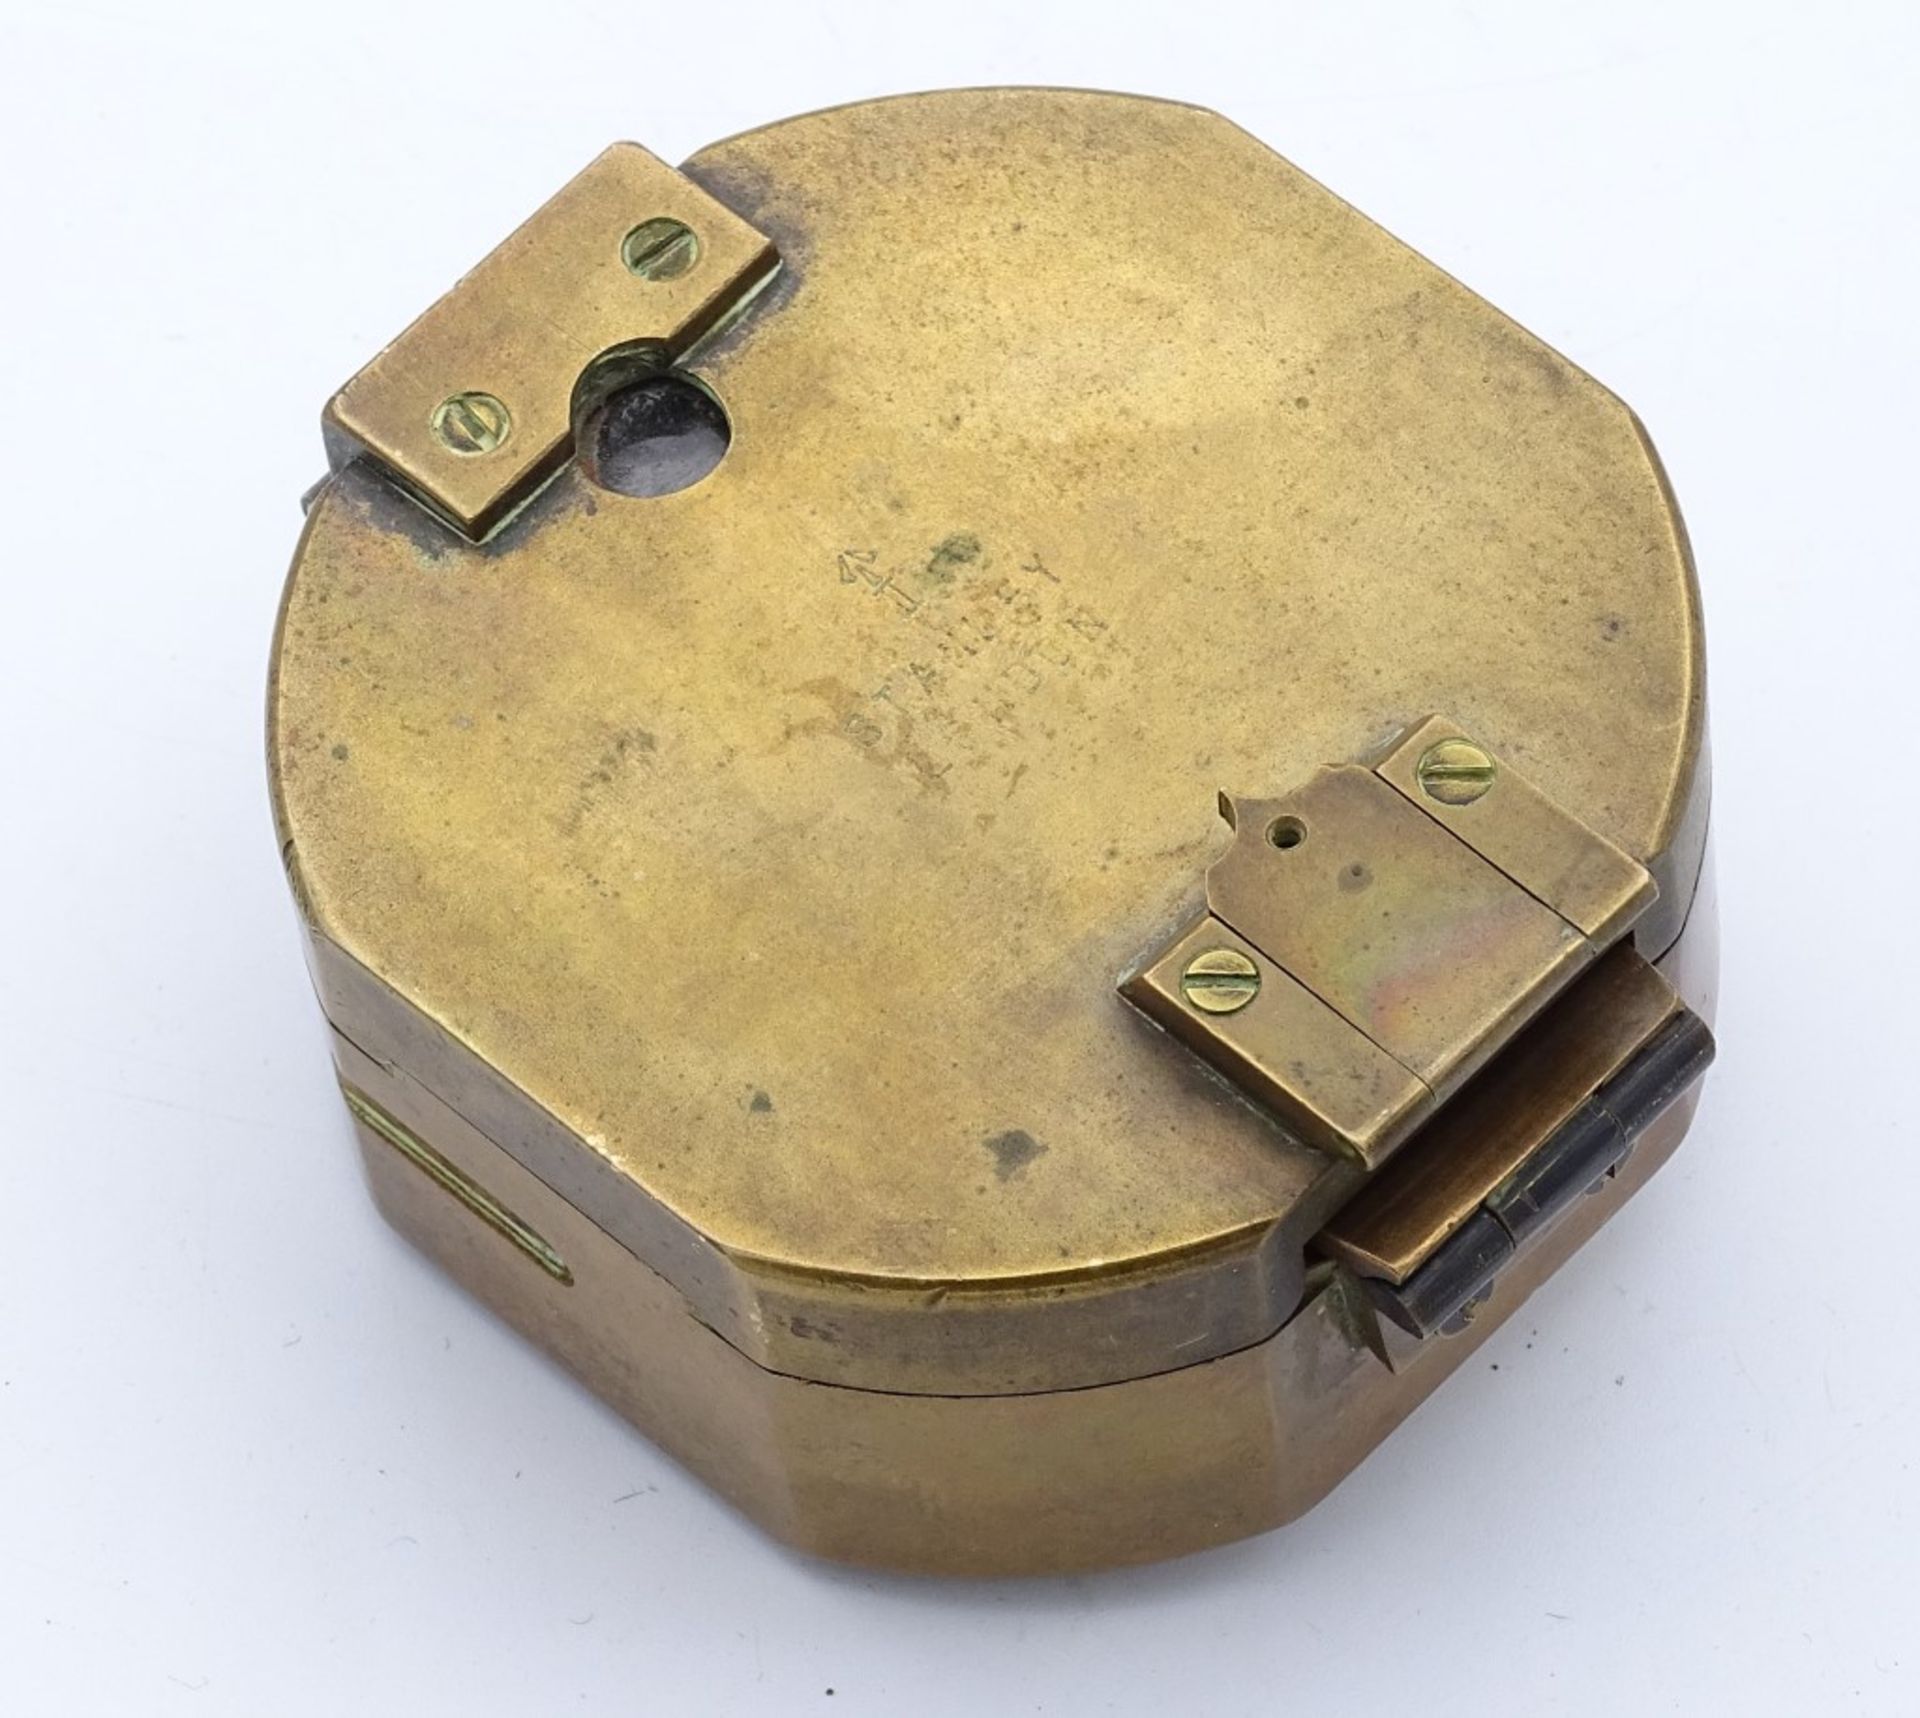 Kl.Kompass "Stanley London" Messinggehäuse mit innliegender Wasserwaage,7,0x8,0cm - Bild 5 aus 6